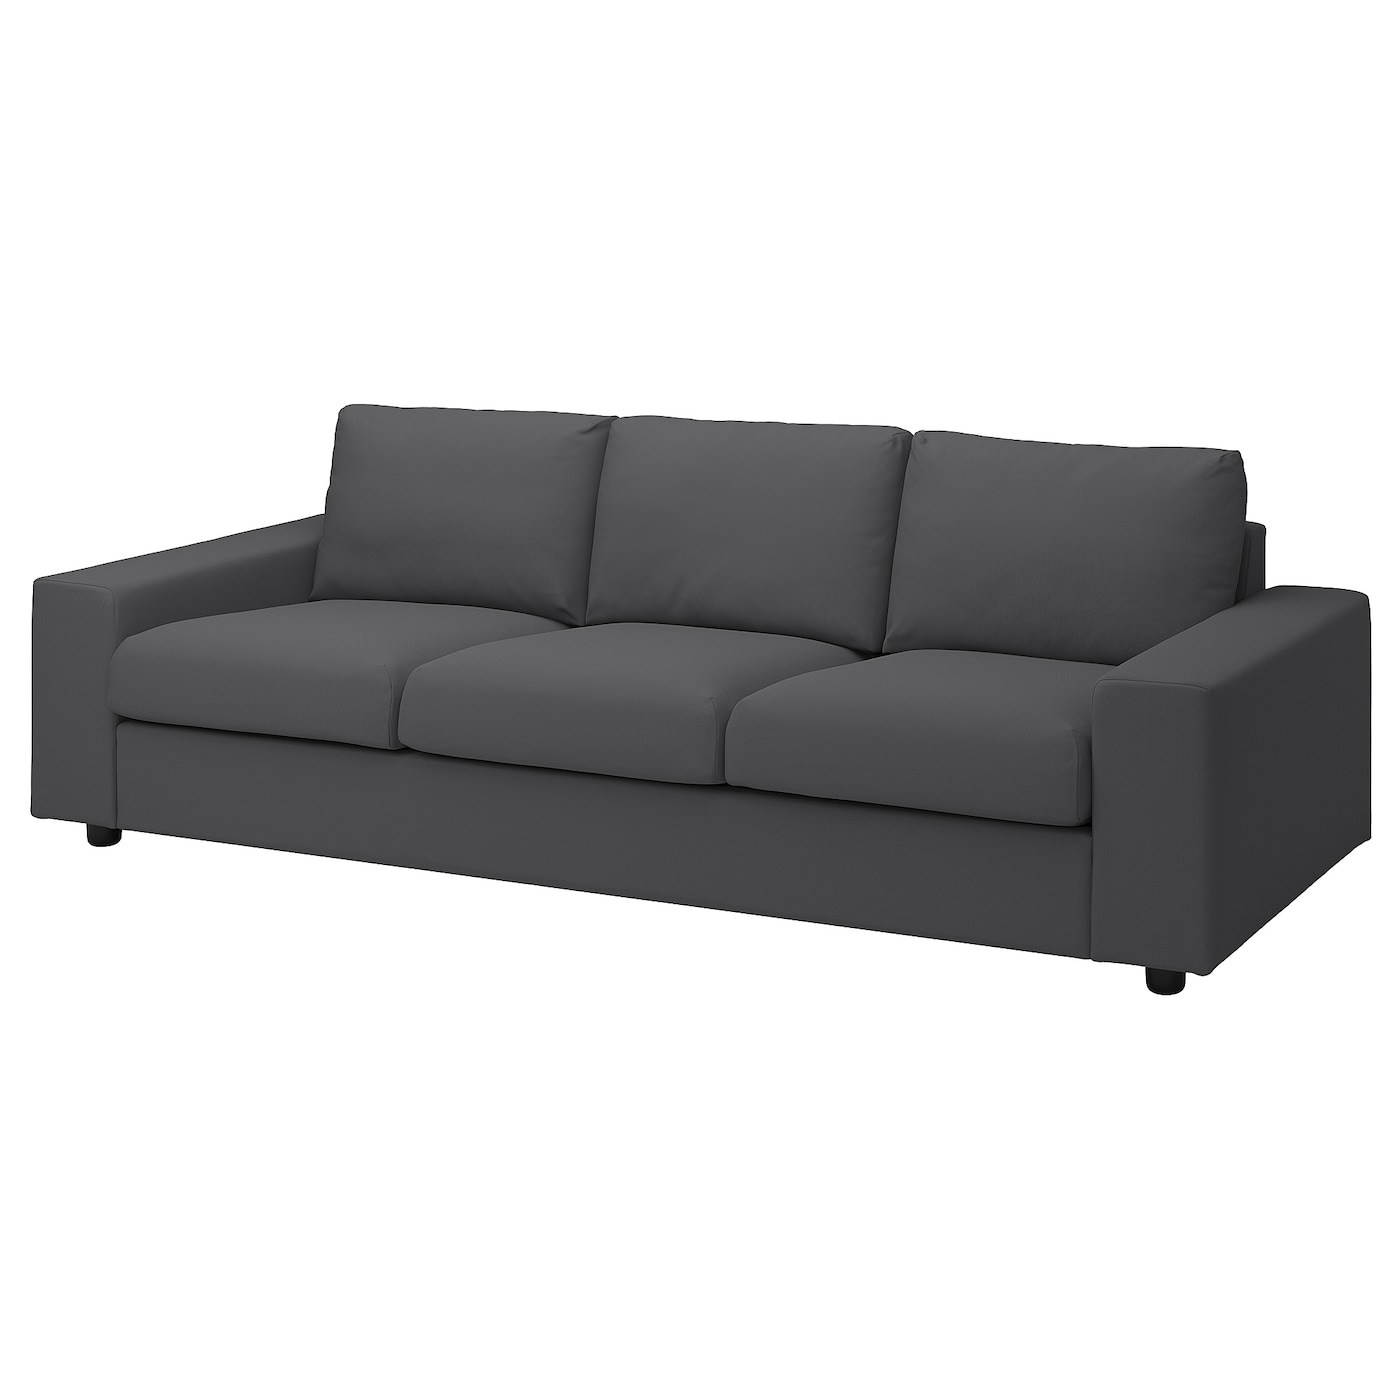 ВИМЛЕ 3-местный диван, с широкими подлокотниками/Халларп серый VIMLE IKEA